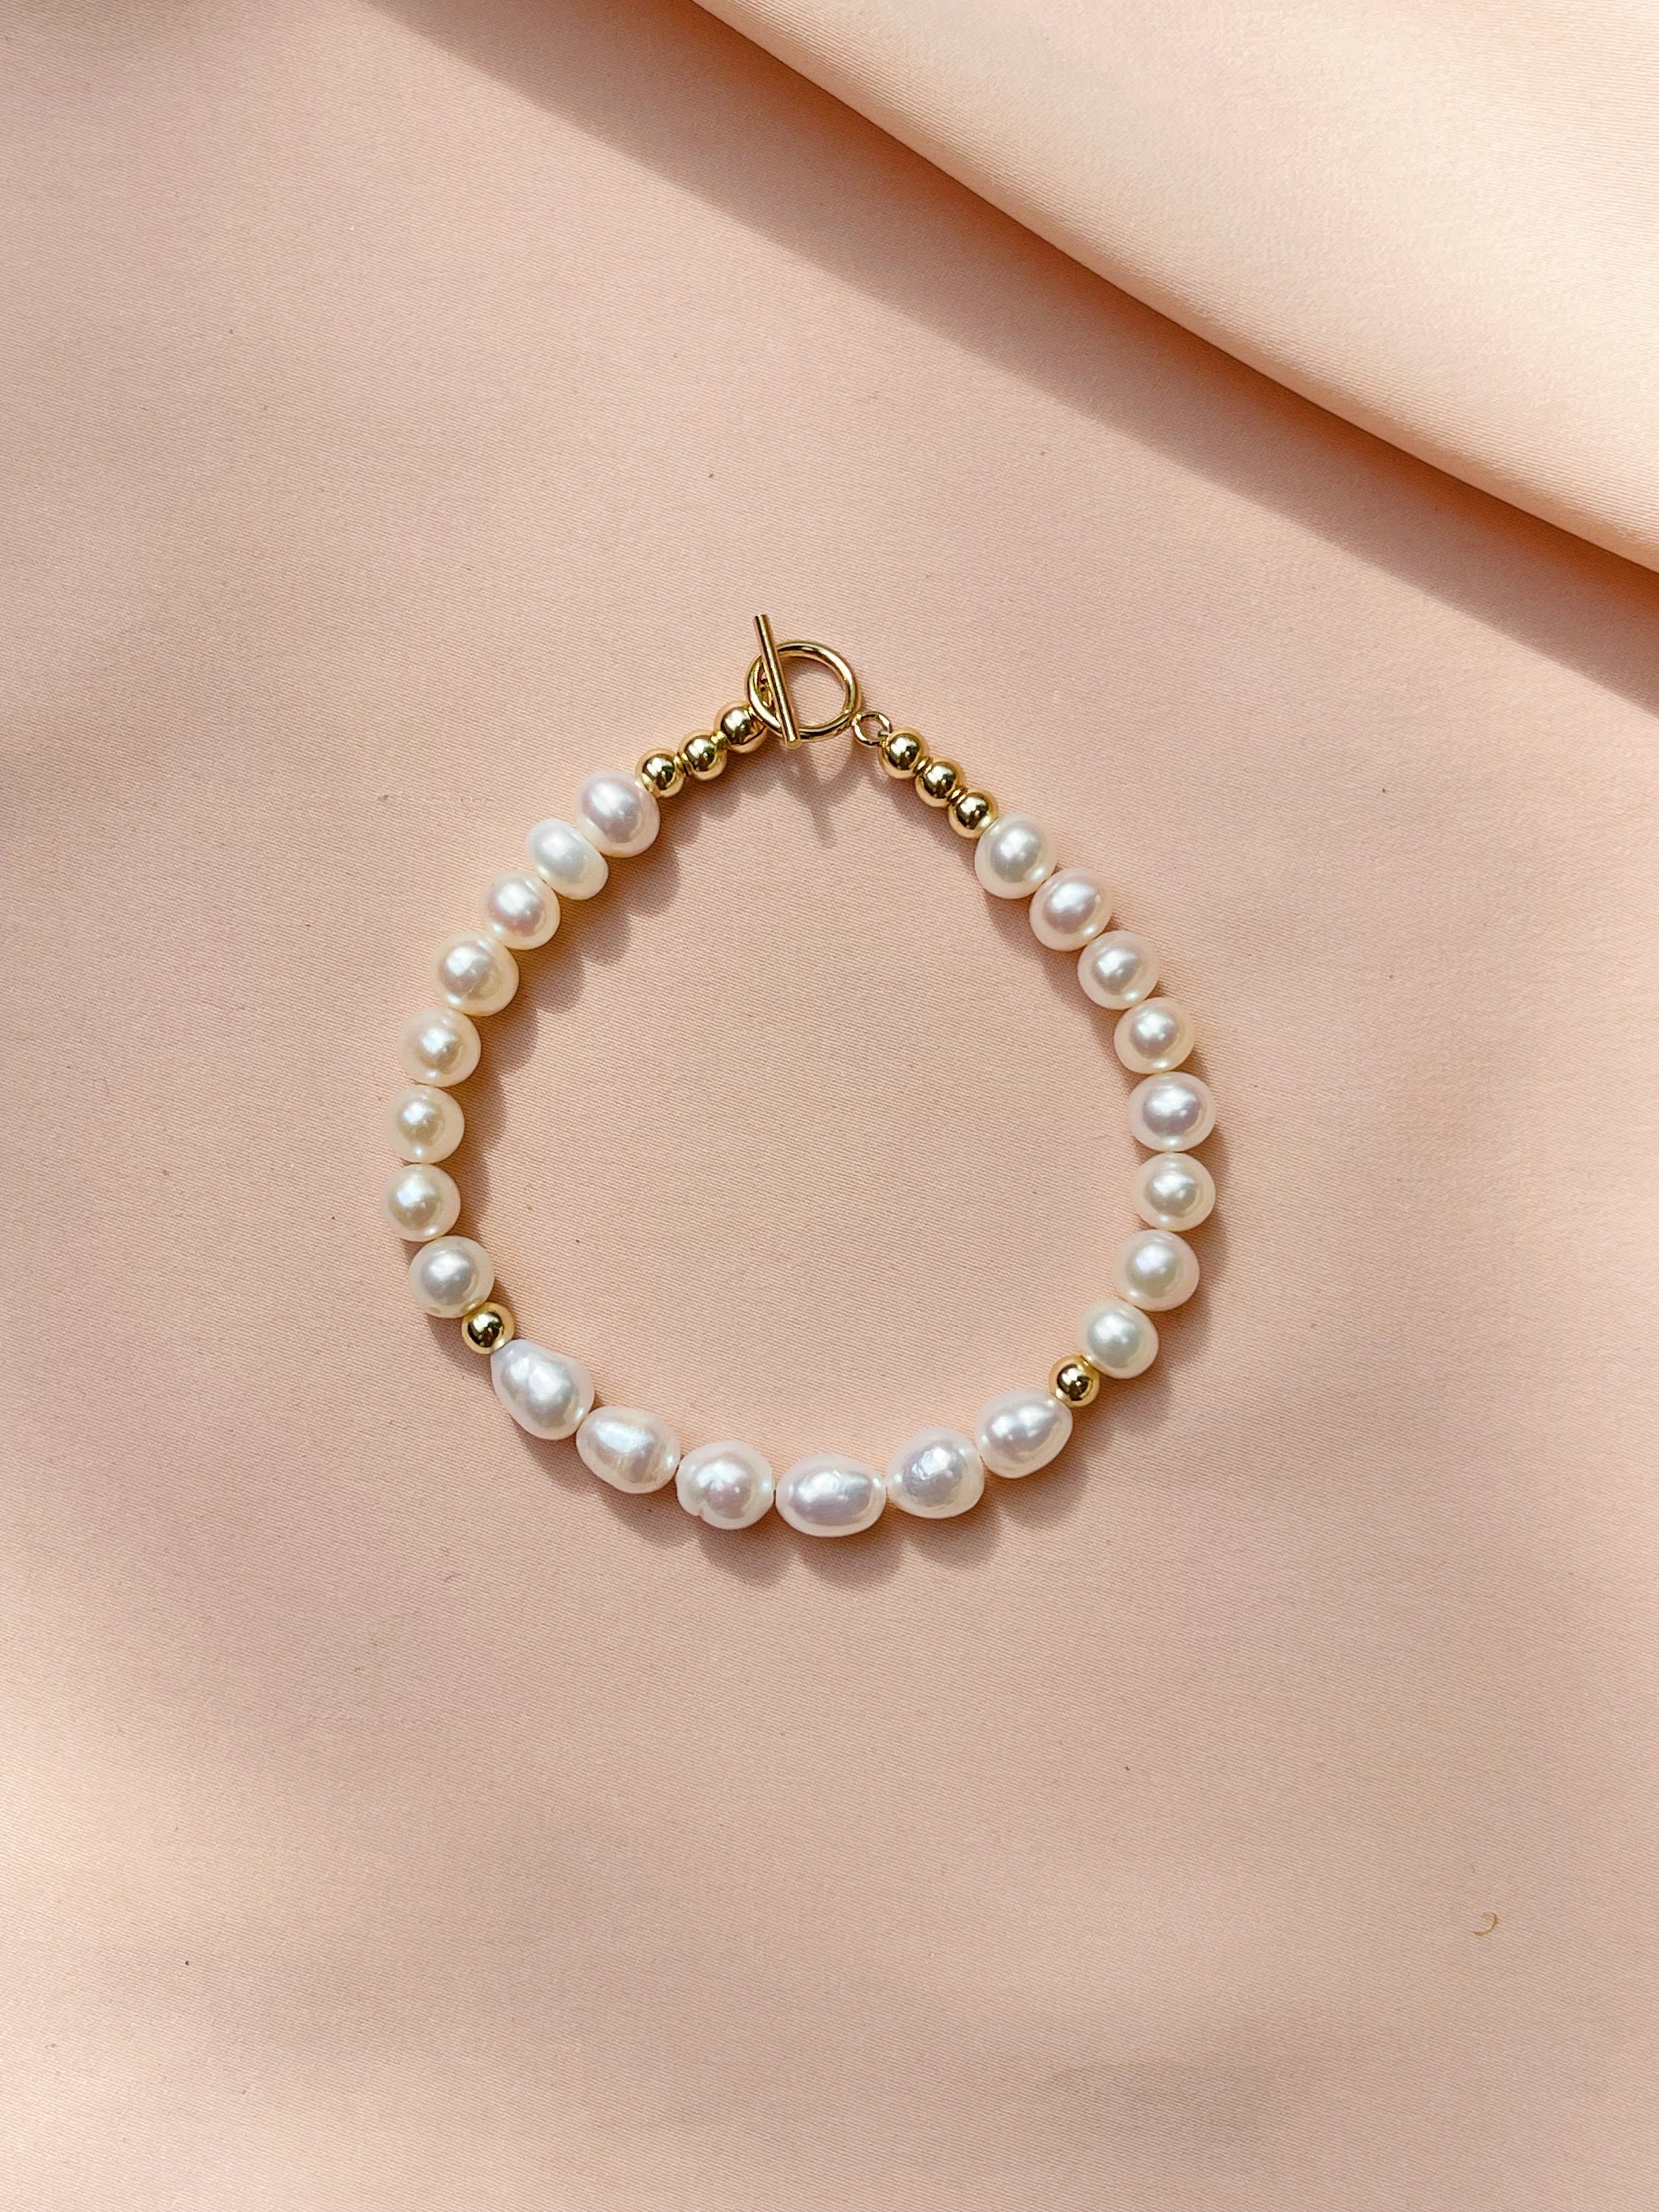 Plum Pearl and Crystal Bracelet - Single Strand, Aubergine, Bridesmaid –  Anna King Jewellery